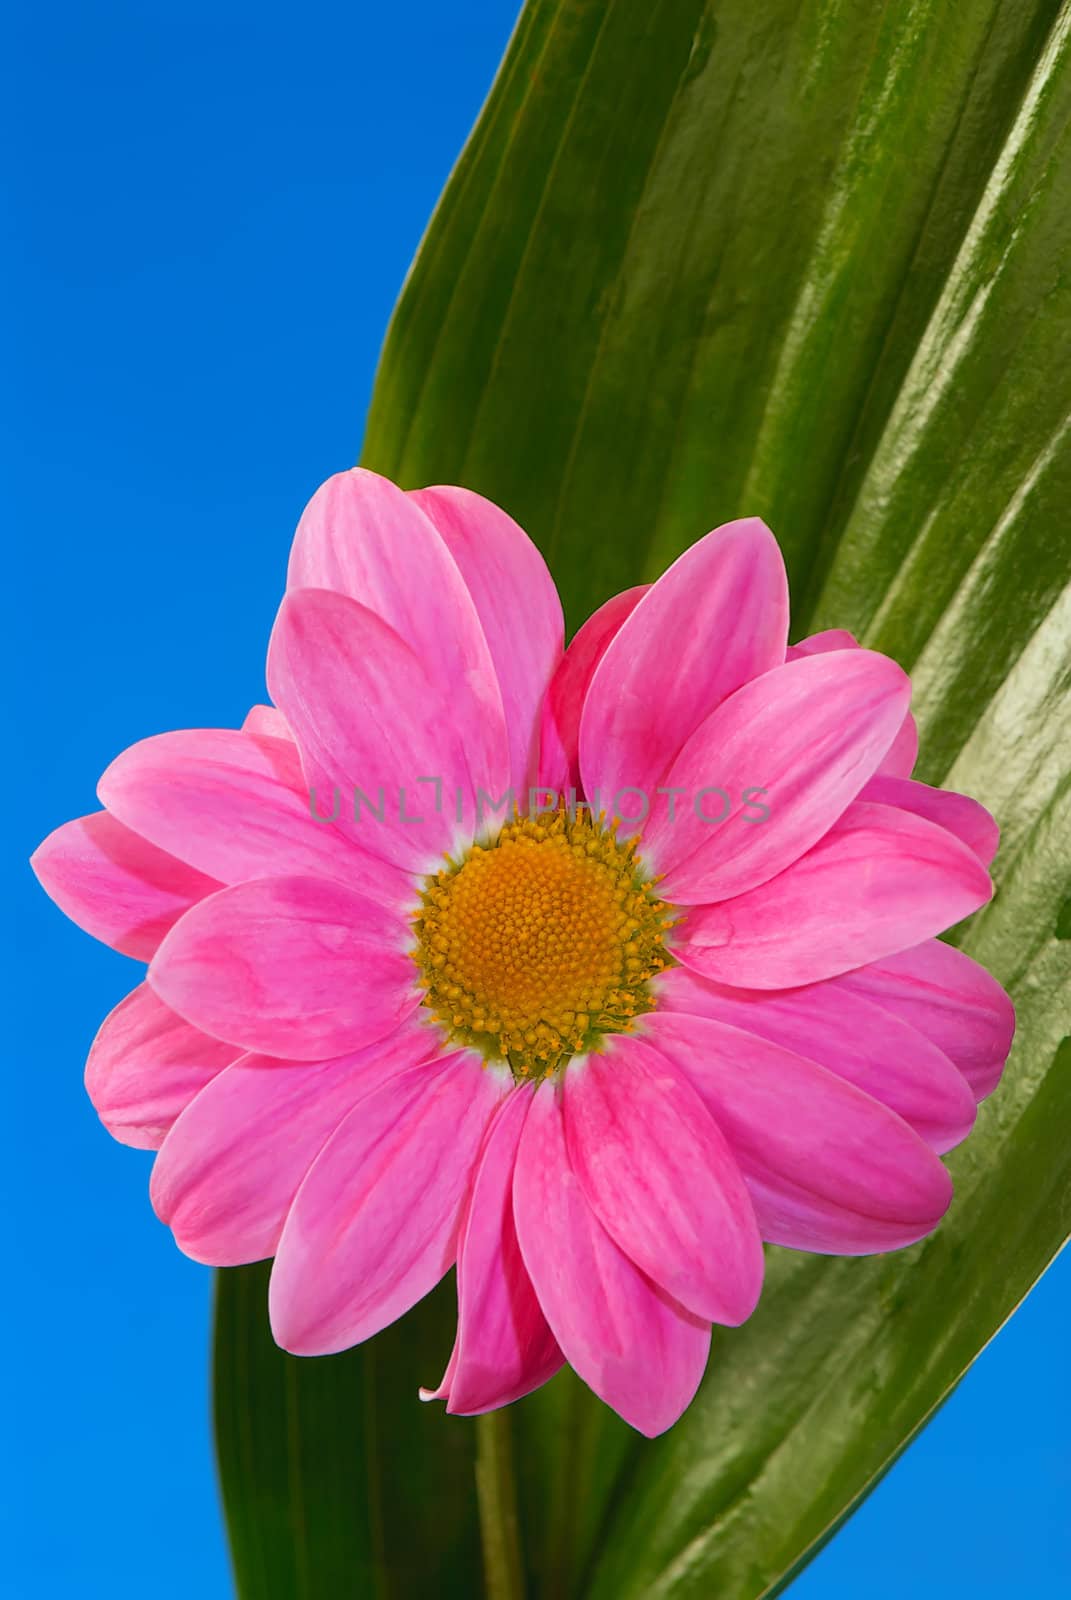 Pink flower on a green exotic leaf. Illustration of spa